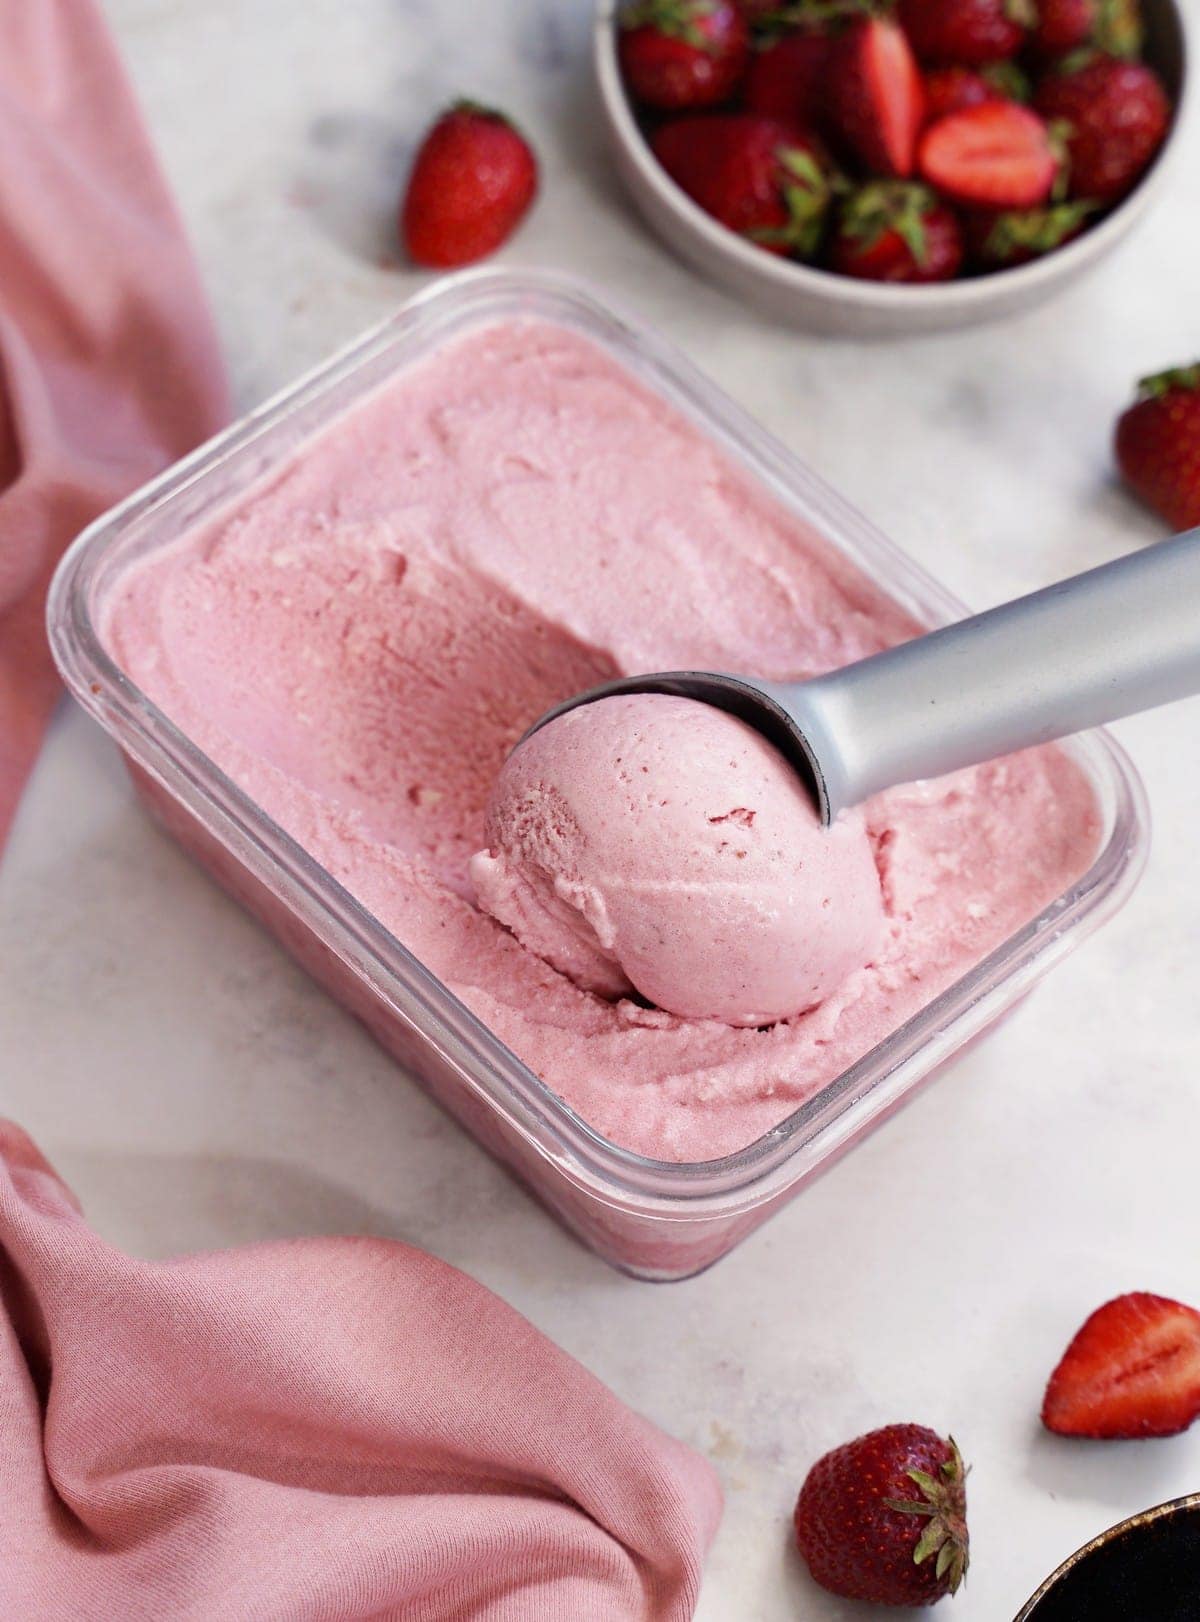 strawberry ice cream in dish with ice cream scoop